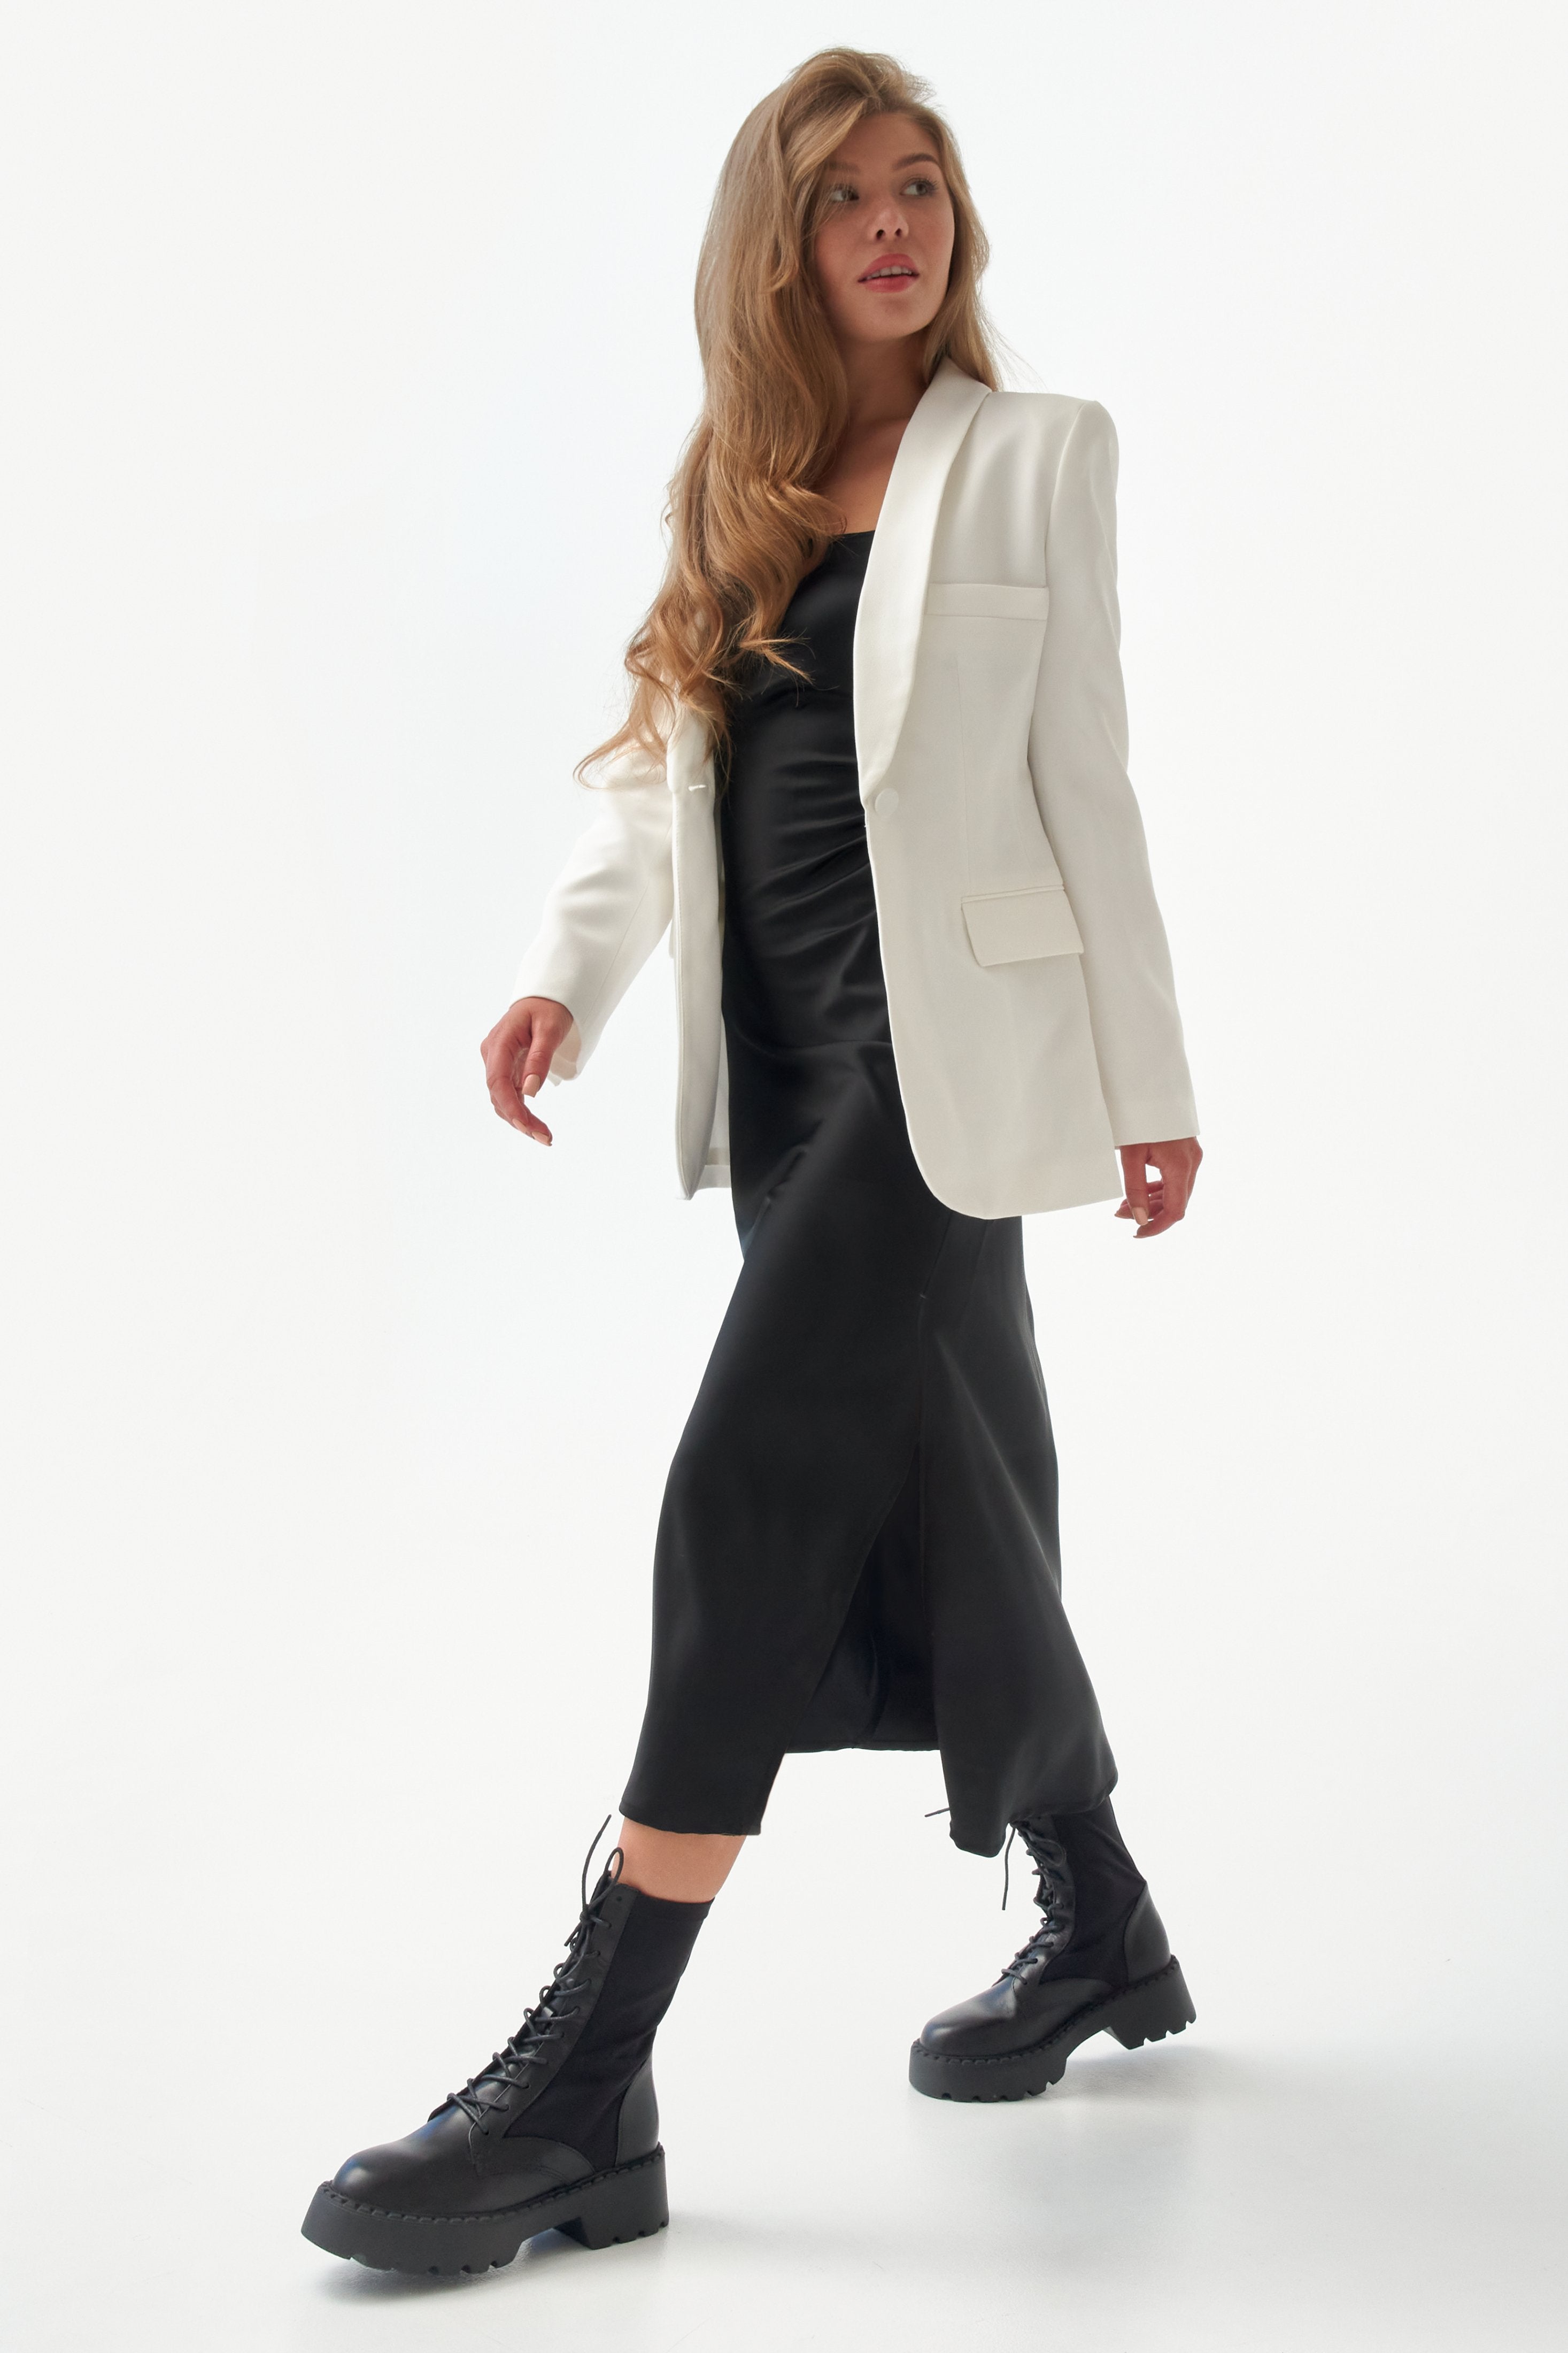 Wysokie botki damskie czarne z elastyczną cholewą marki Estro - prezentacja obuwia na modelce.